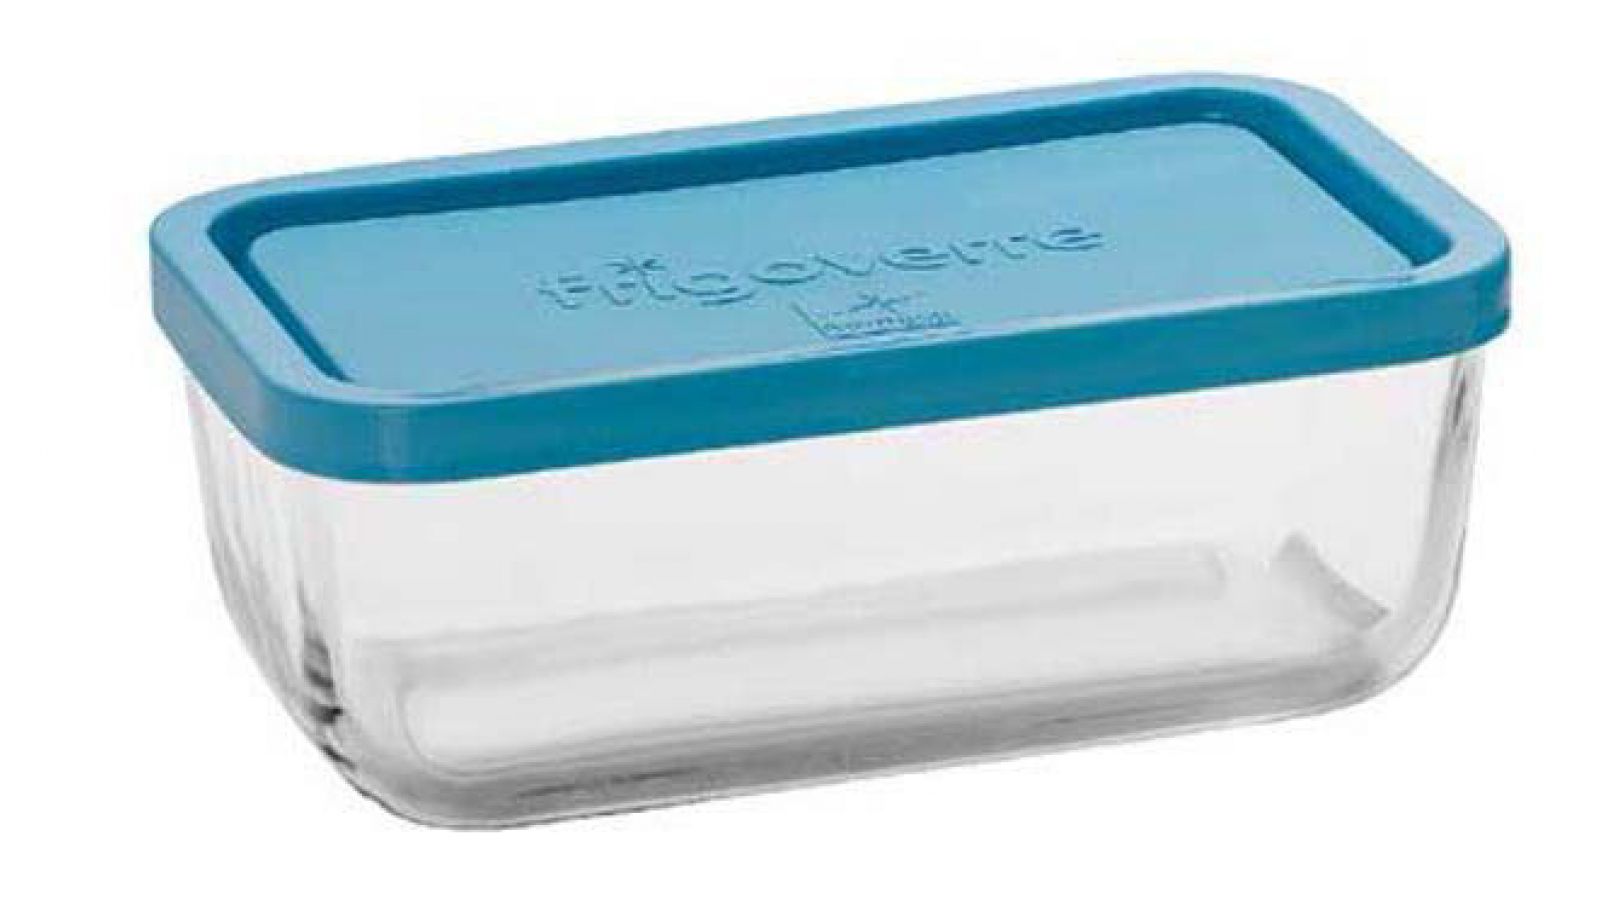 Bormioli rocco frigoverre, contenitore per alimenti 22x22 cm con coperchio  azzurro